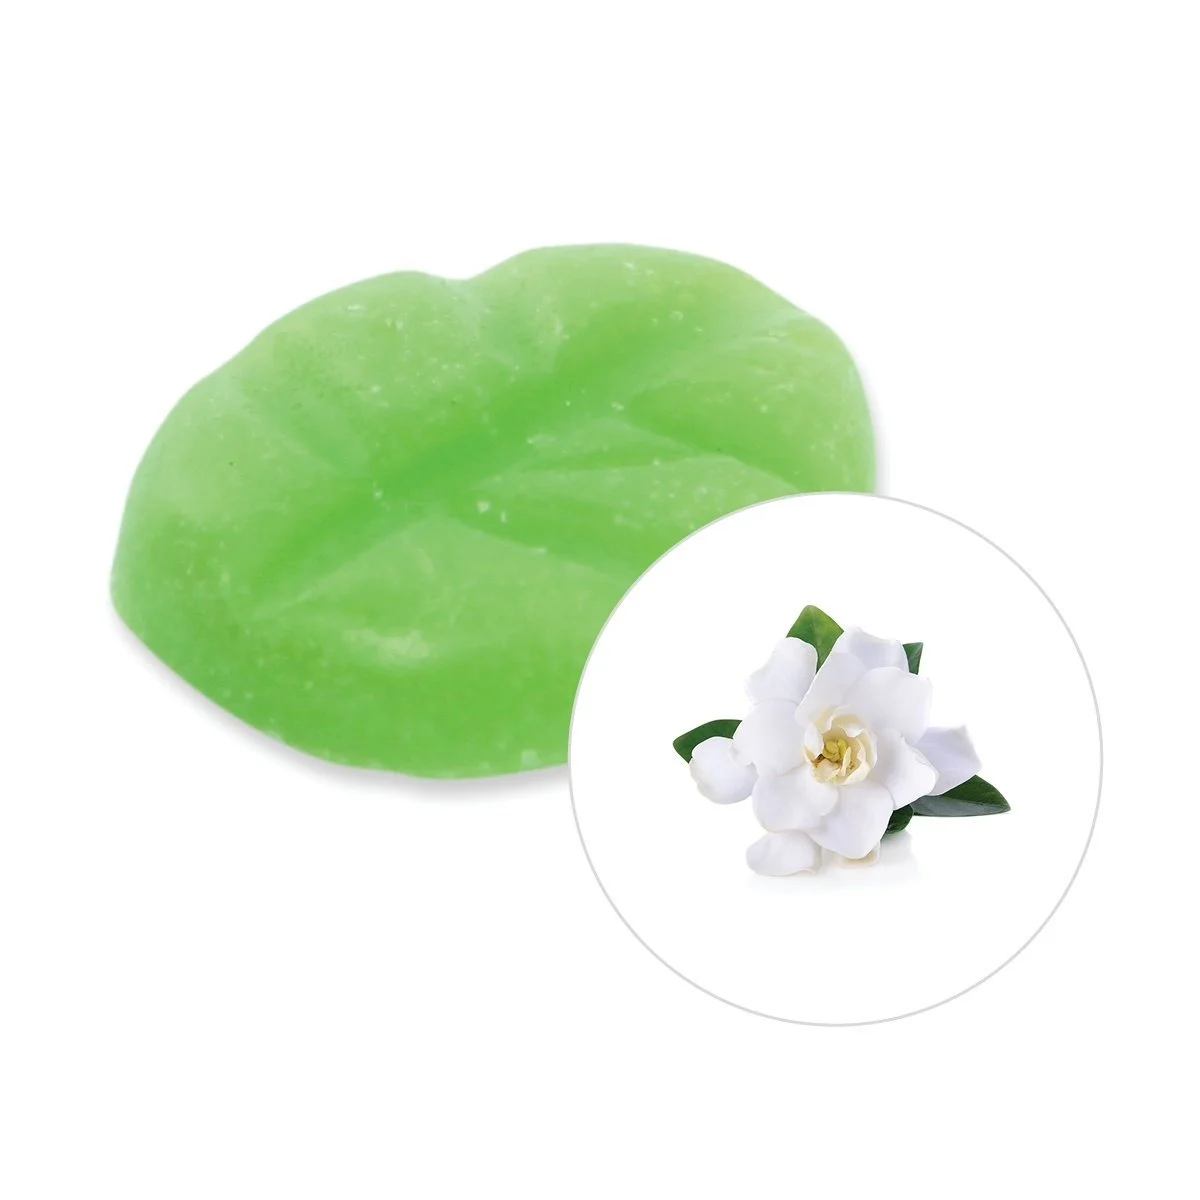 scentchips-gardenia-wax-melts